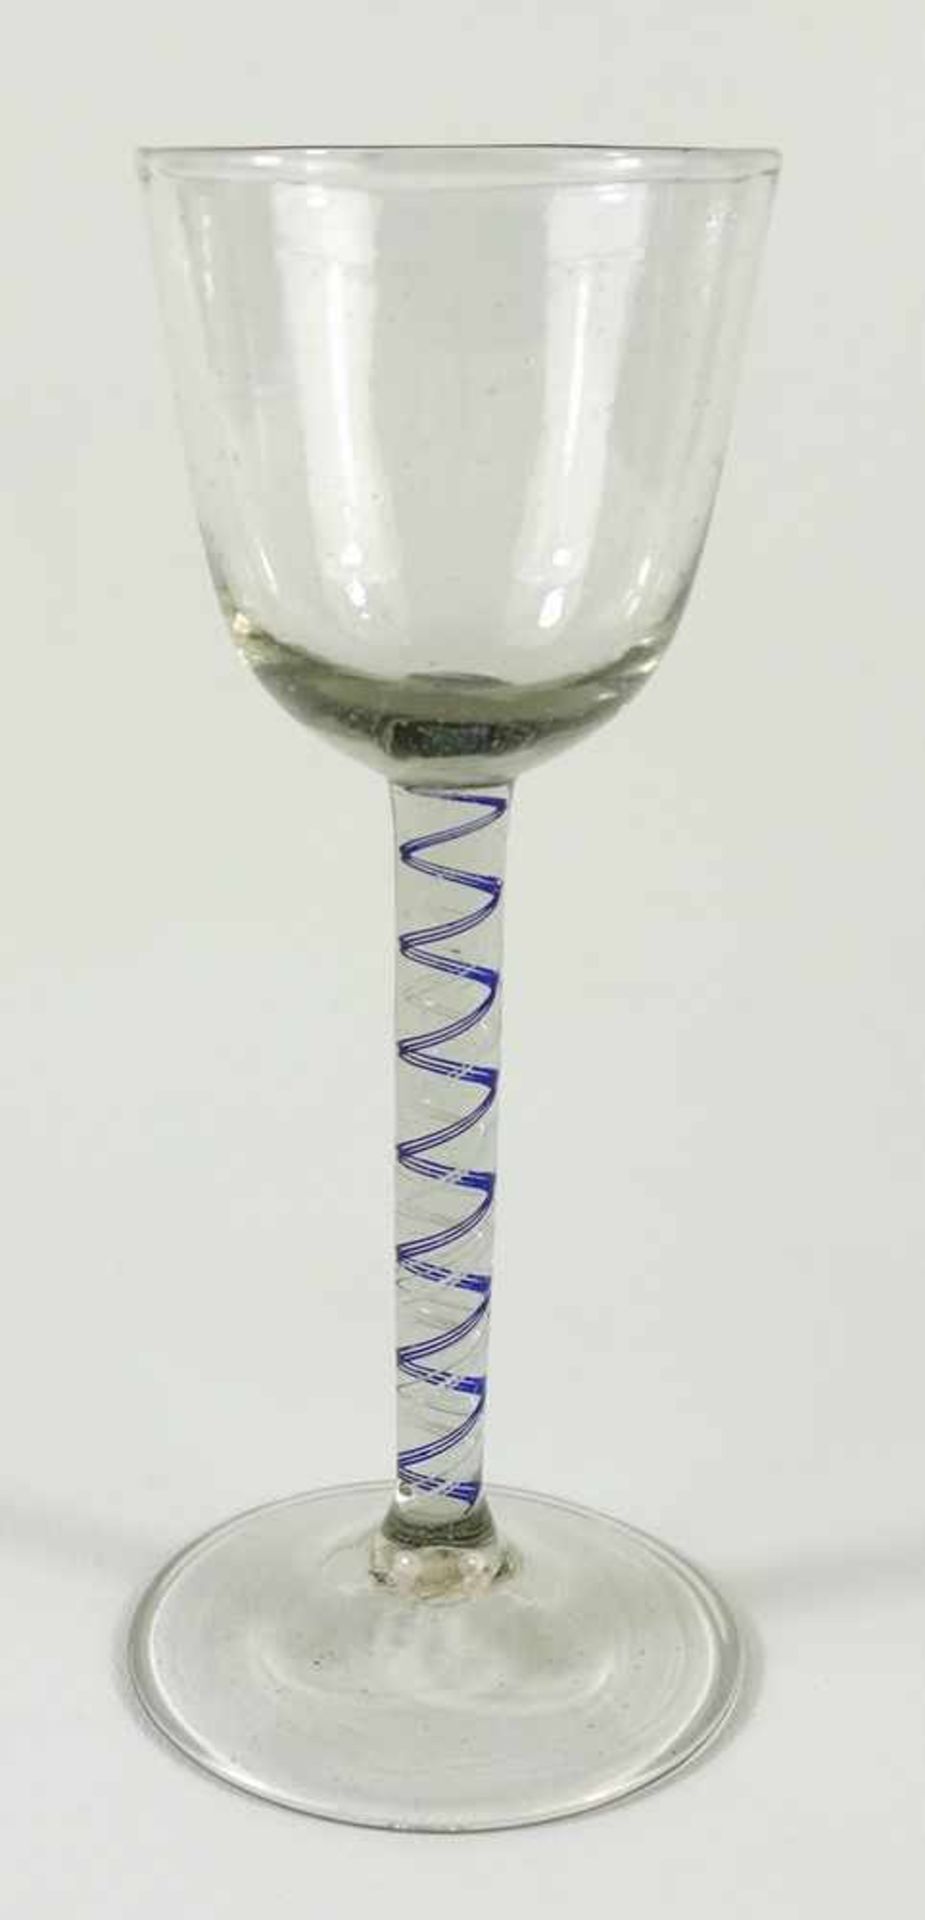 Fadenglas, wohl Lauscha, 18.Jh., diverse Luftblaseneinschlüsse, Abriss, Schaft mit zweifarbiger